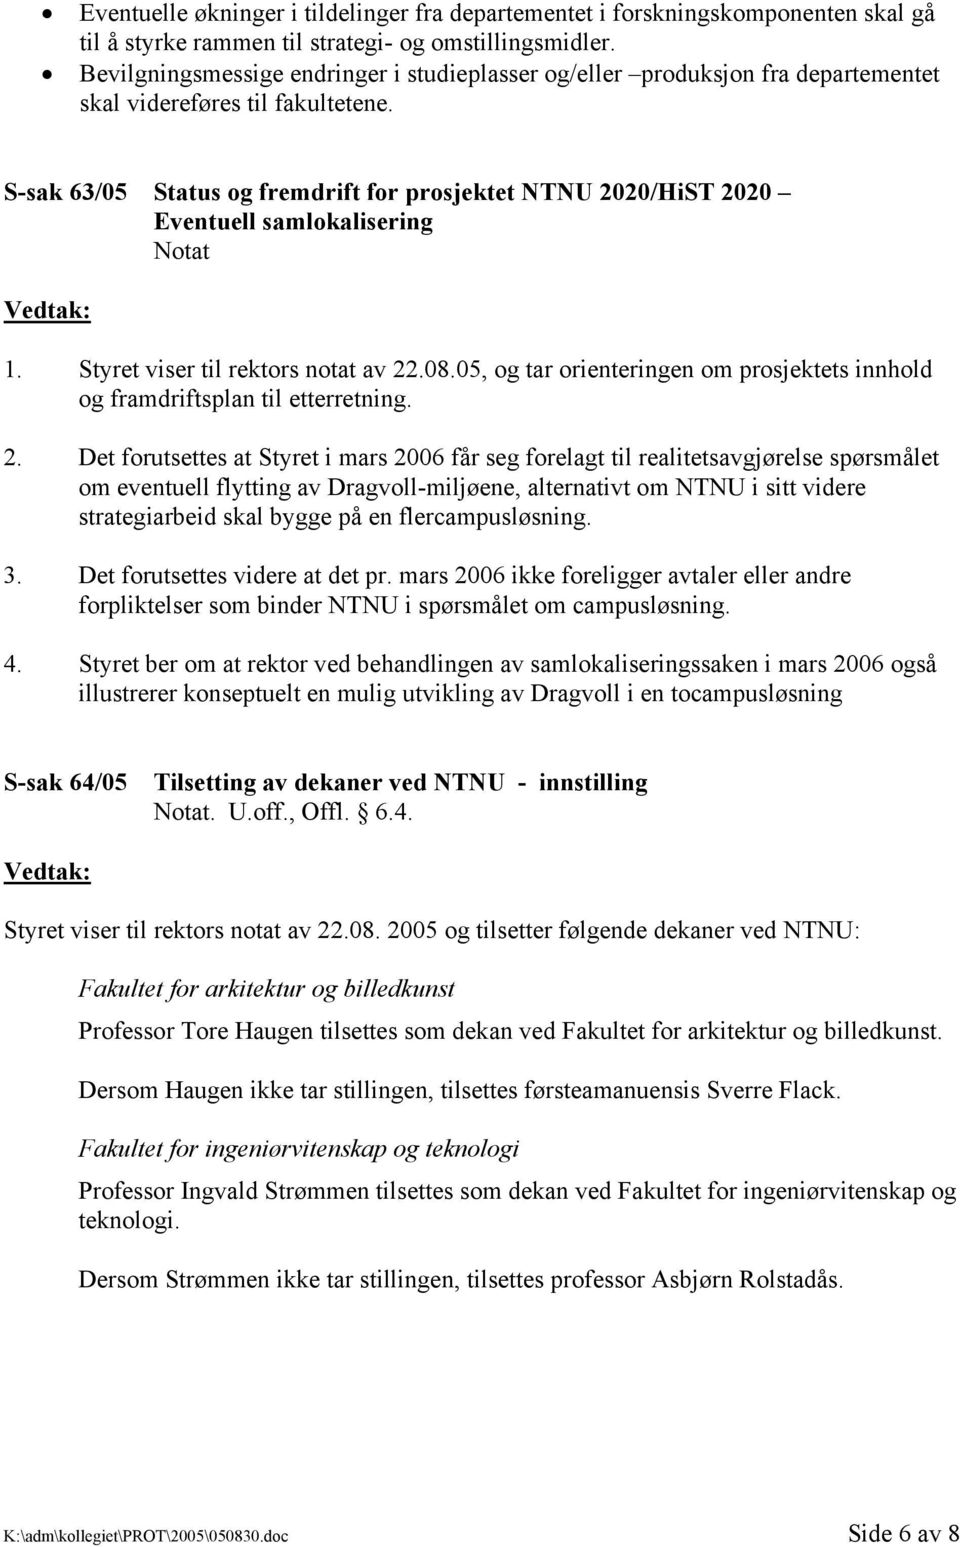 S-sak 63/05 Status og fremdrift for prosjektet NTNU 2020/HiST 2020 Eventuell samlokalisering 1. Styret viser til rektors notat av 22.08.